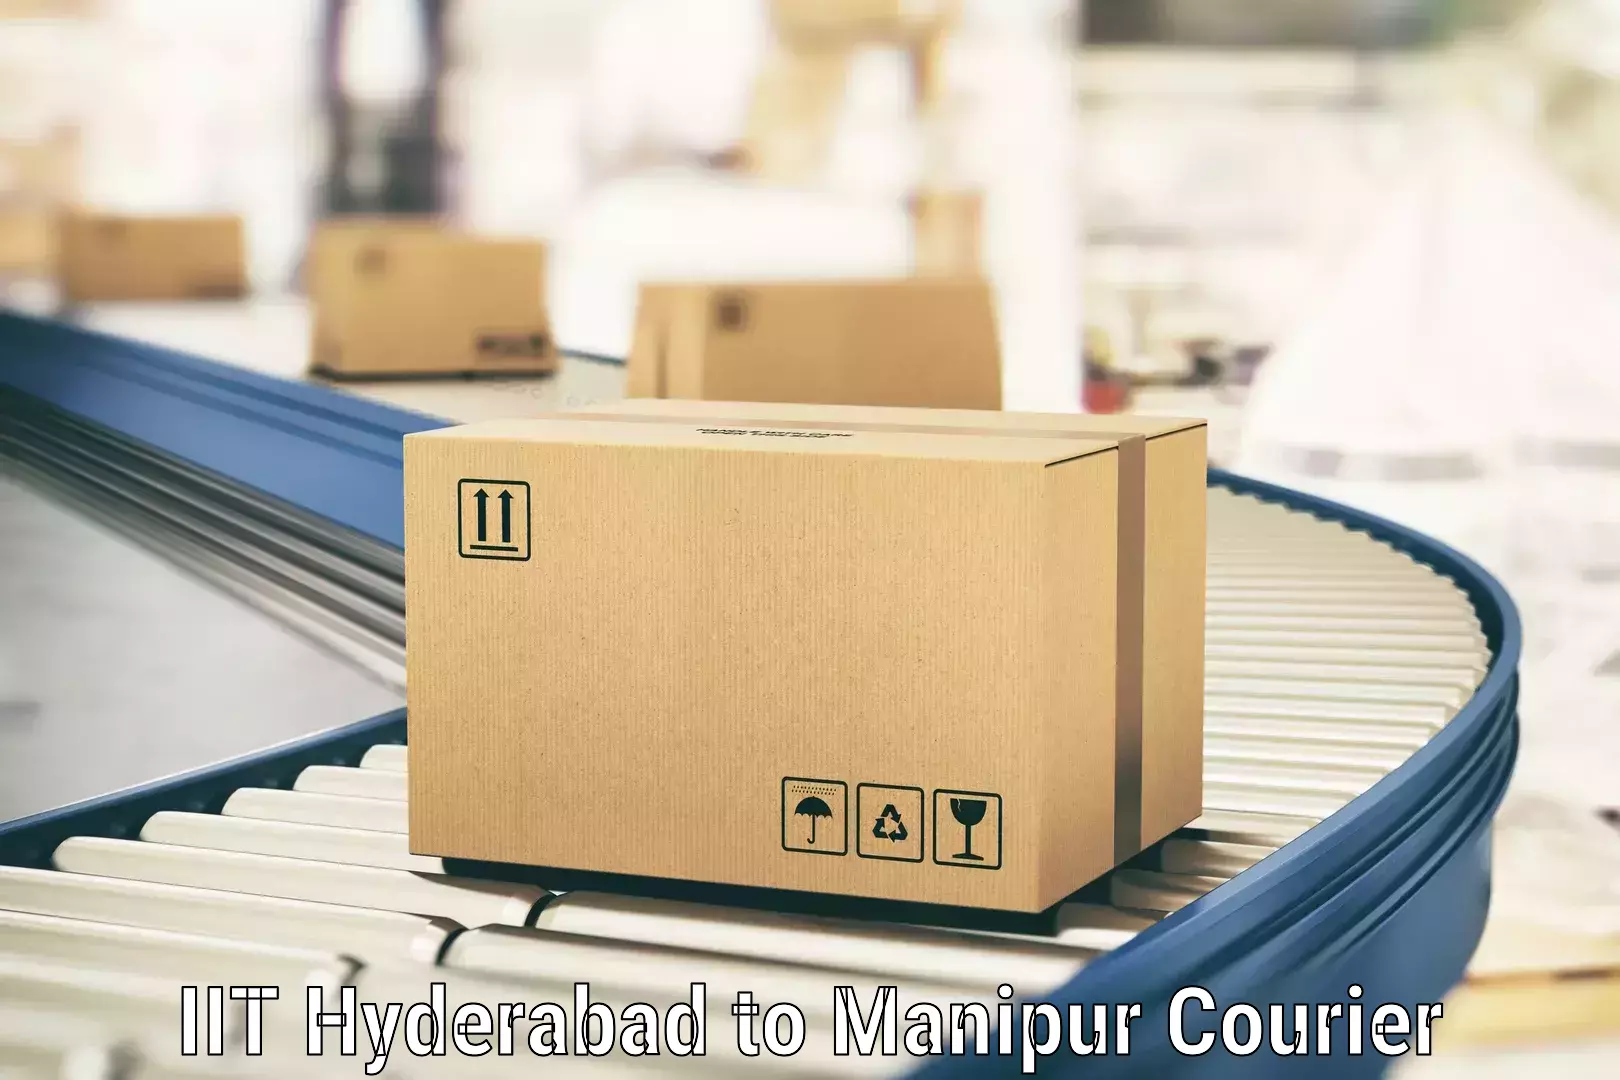 Premium courier solutions IIT Hyderabad to Chandel